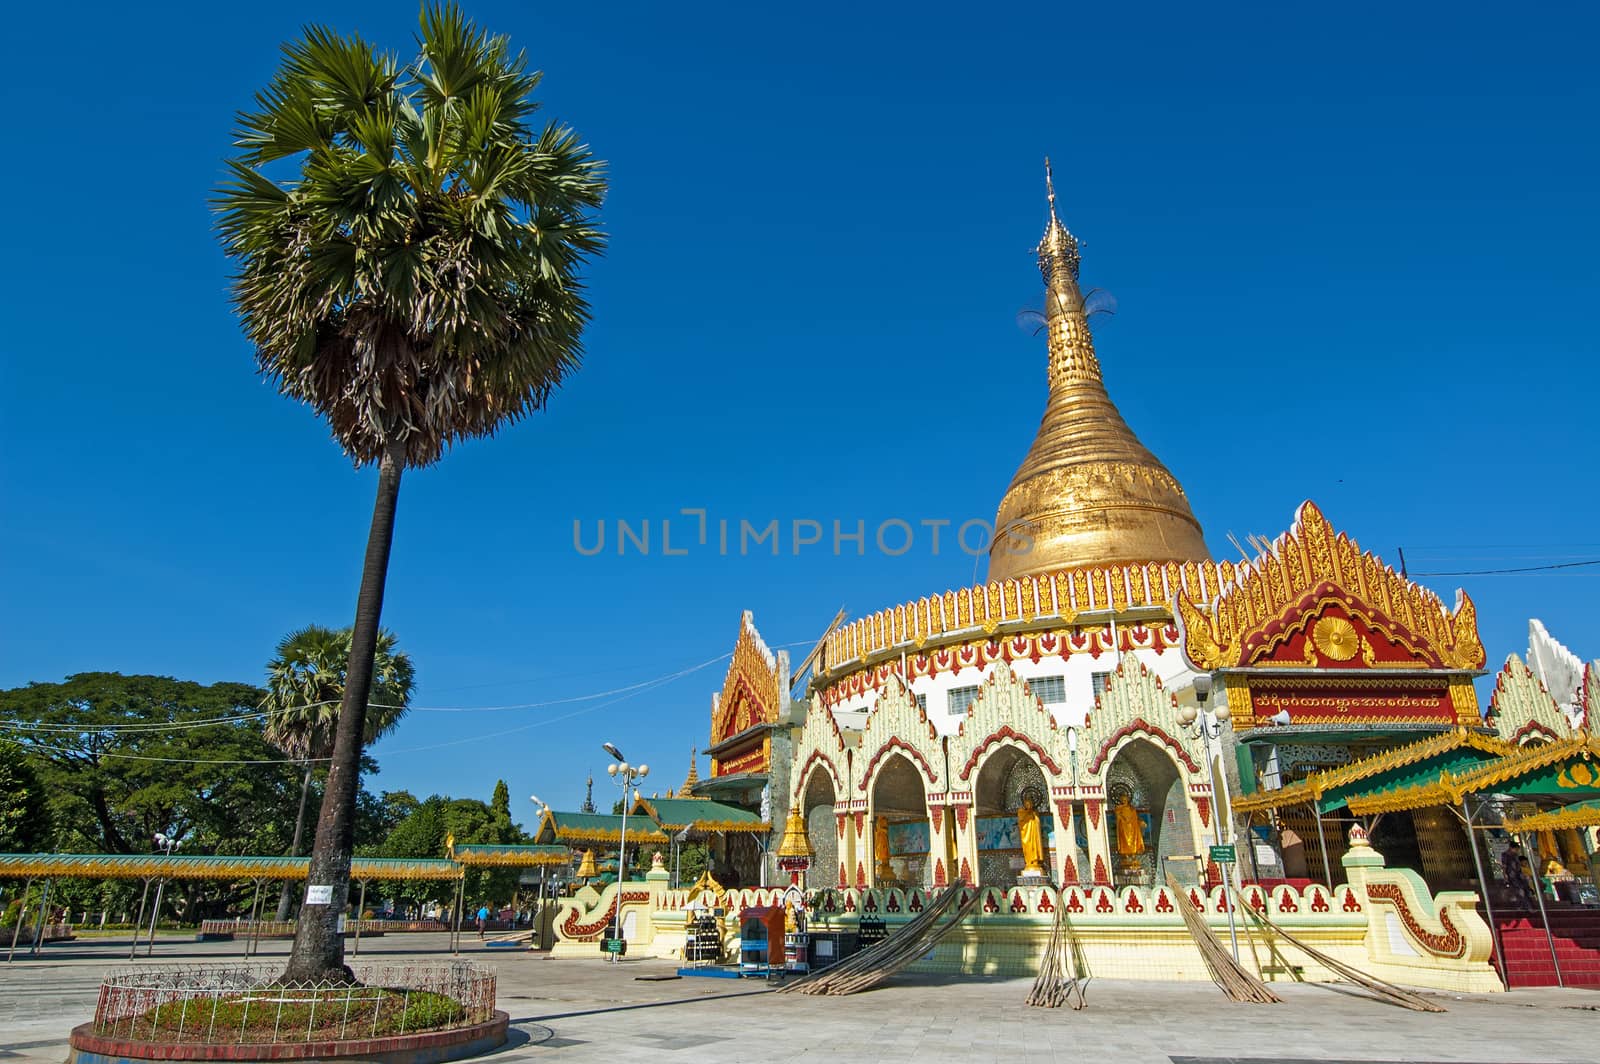 Kaba Aye Pagoda in Rangoon, Myanmar